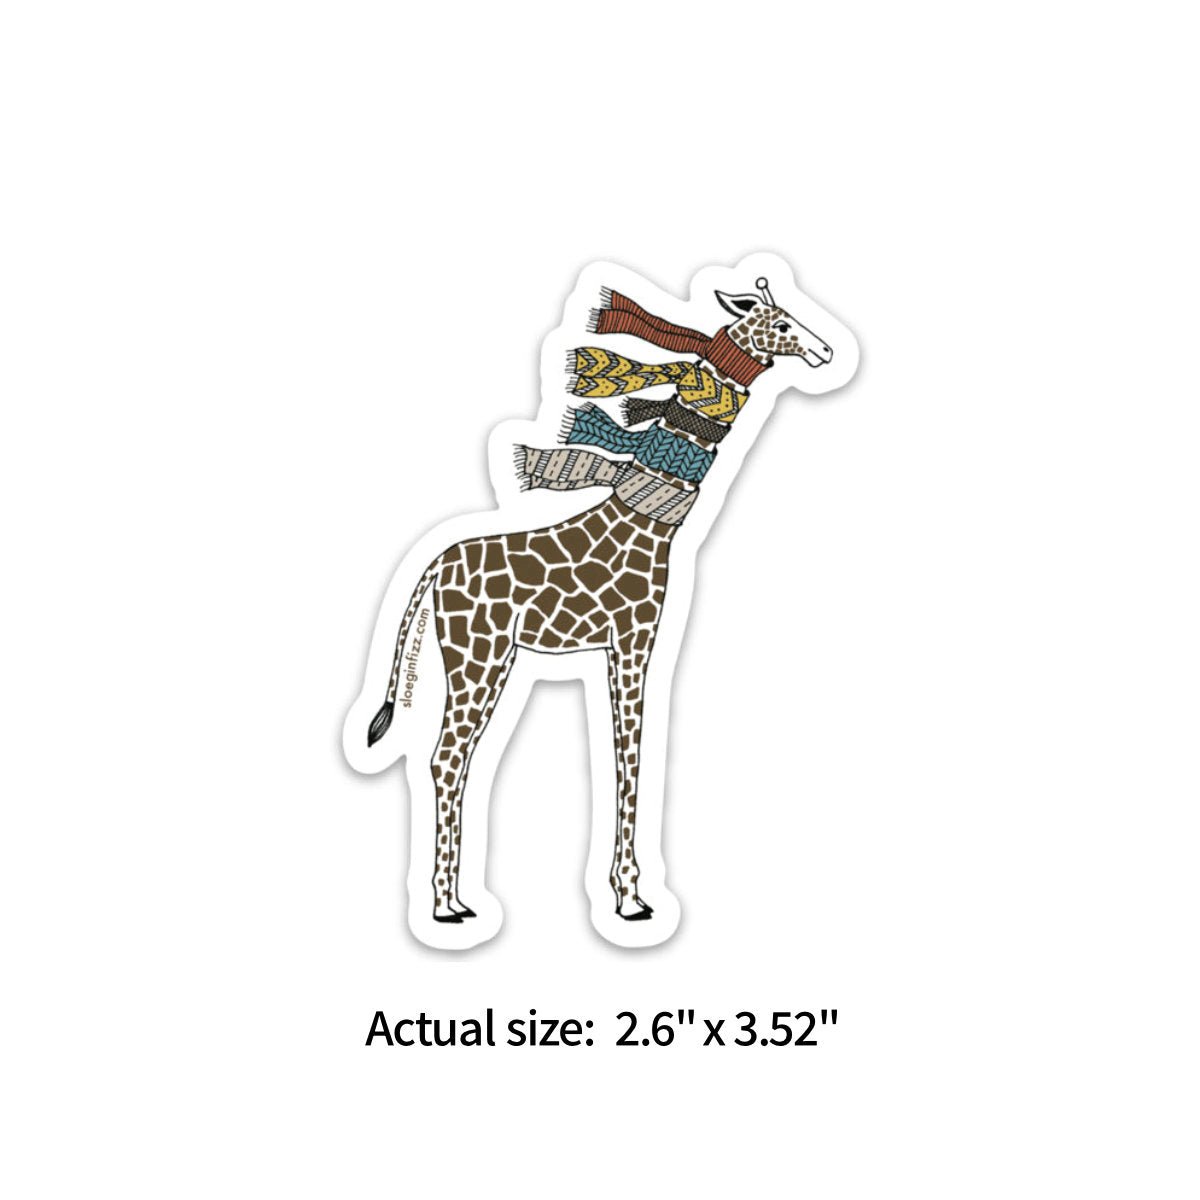 Sticker - Giraffe With Scarves - Notegeist